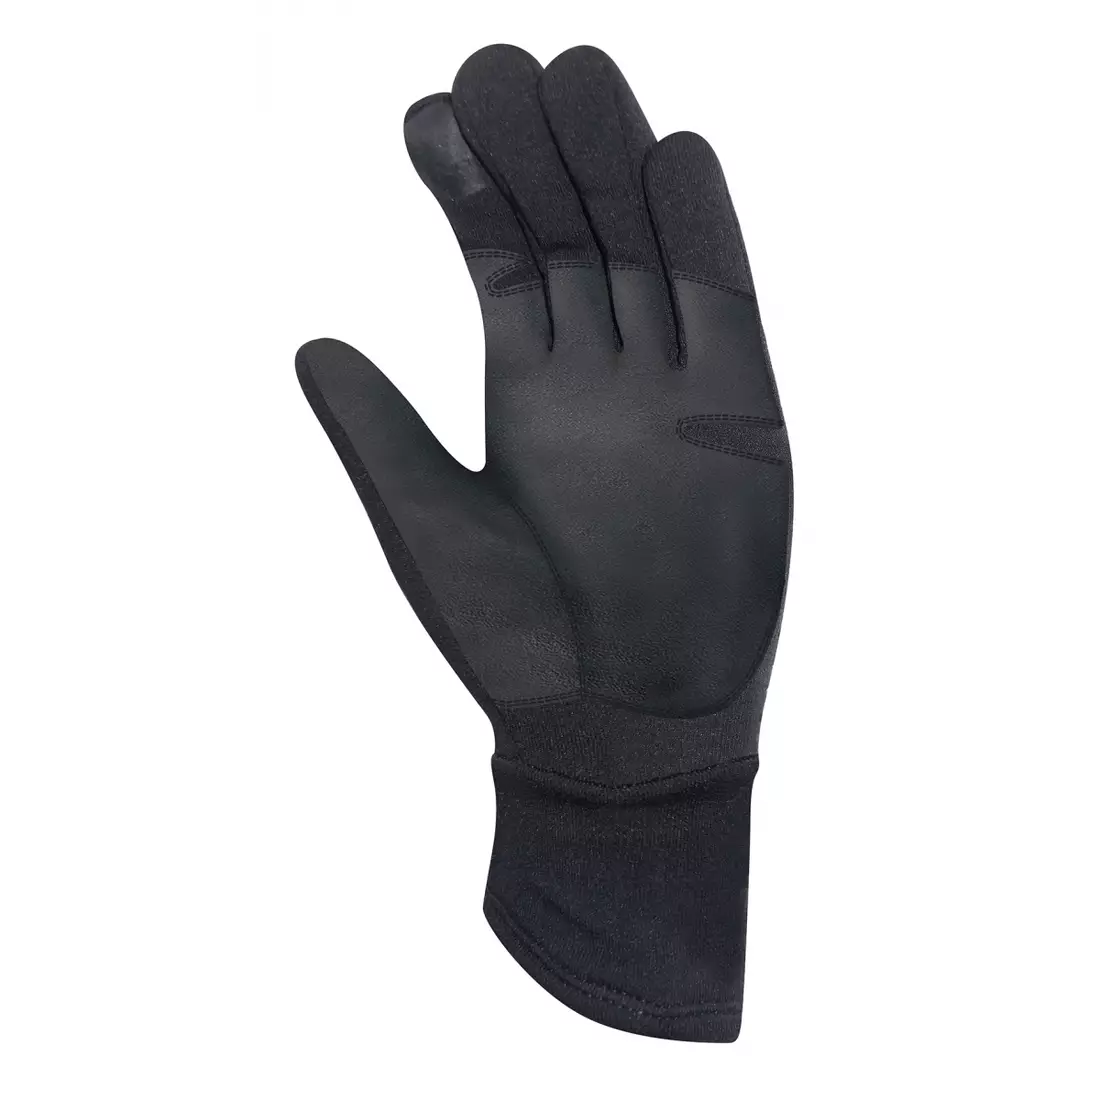 CHIBA POLARFLEECE TITAN mănuși de iarnă, negre 